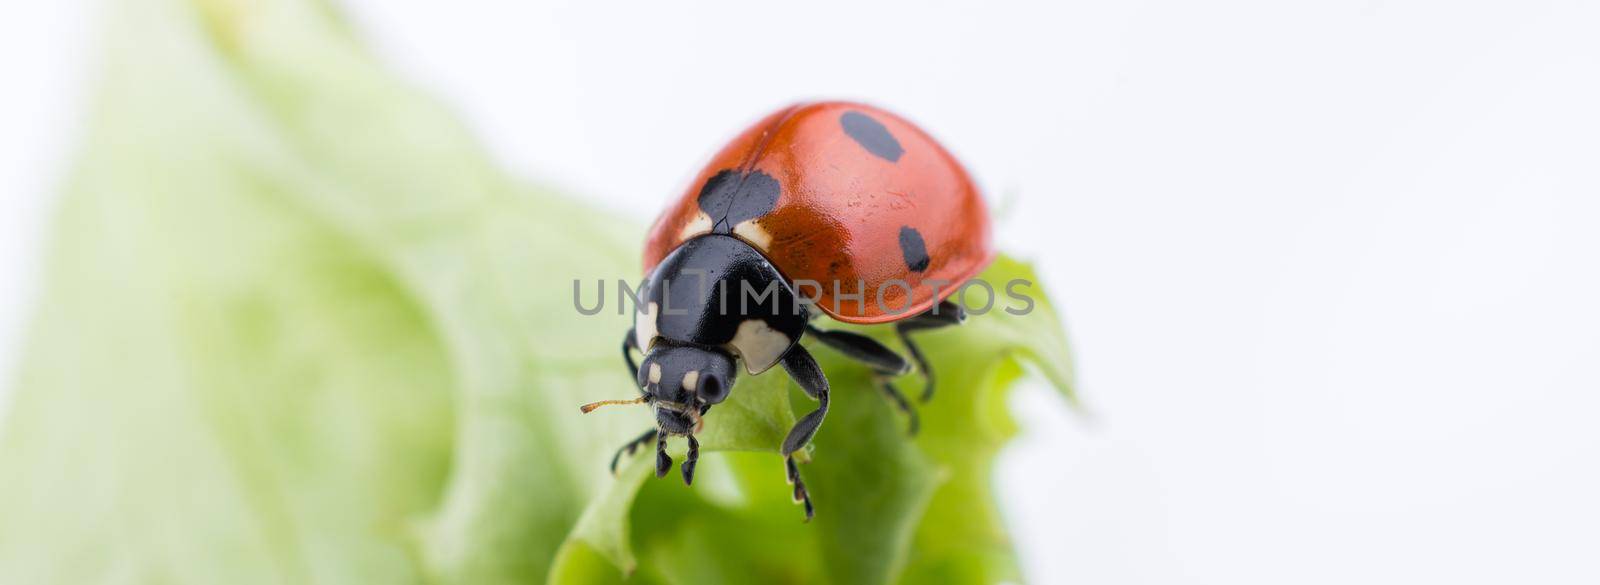 Beautiful photo of red ladybug walking on lettuce